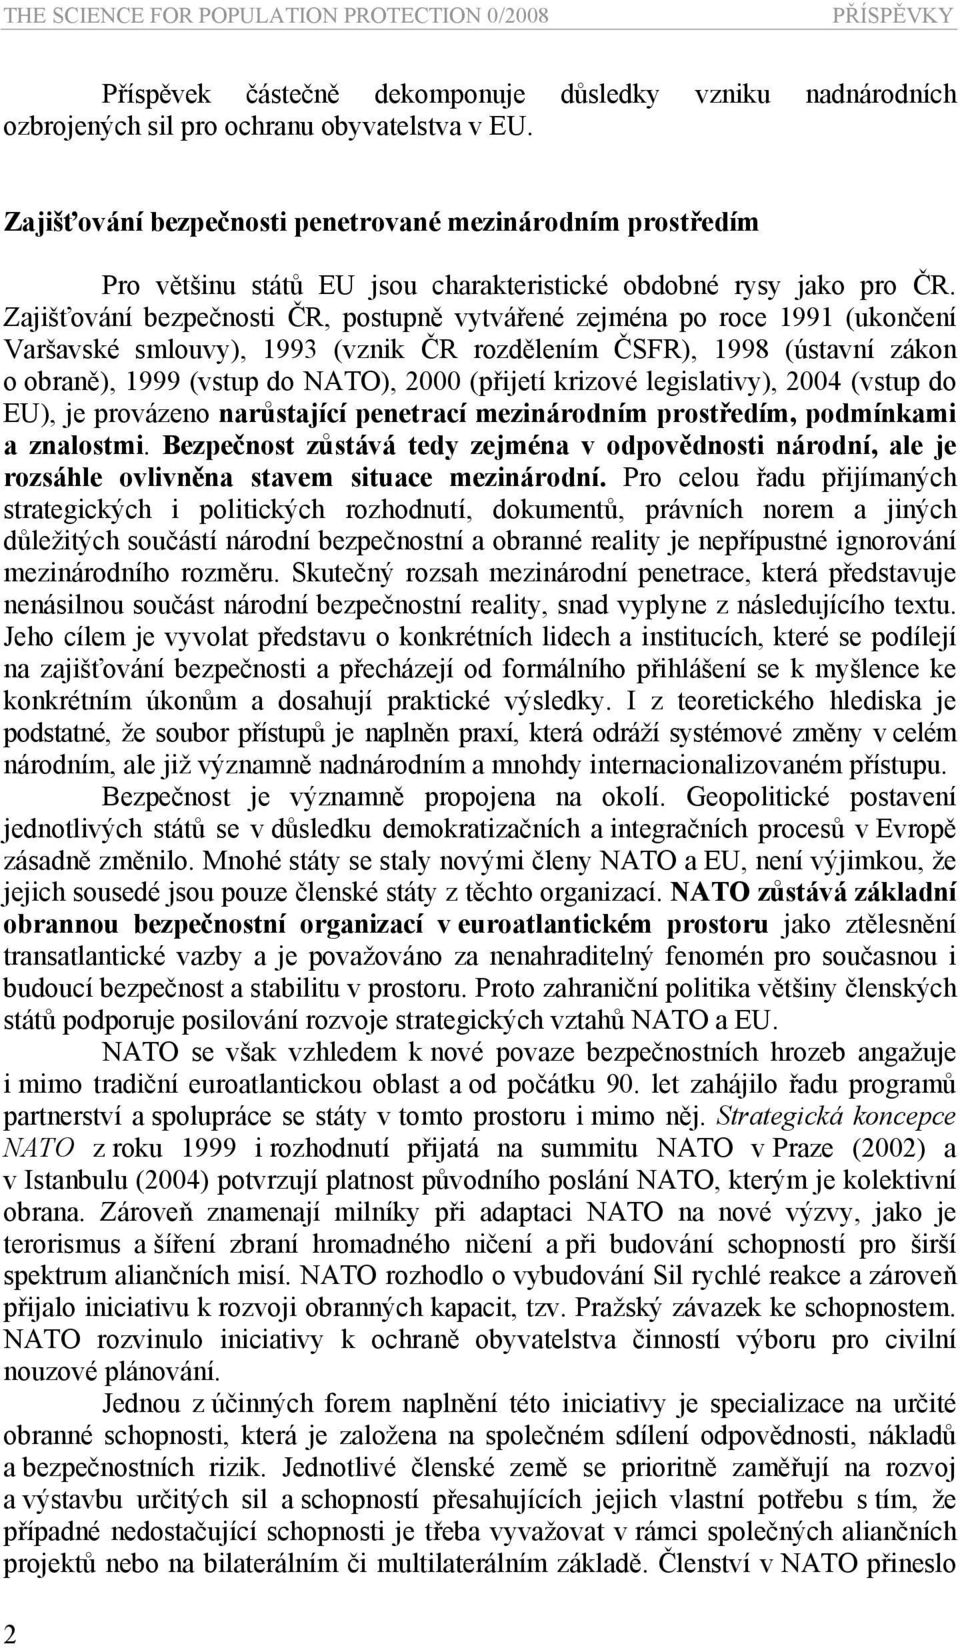 Zajišťování bezpečnosti ČR, postupně vytvářené zejména po roce 1991 (ukončení Varšavské smlouvy), 1993 (vznik ČR rozdělením ČSFR), 1998 (ústavní zákon o obraně), 1999 (vstup do NATO), 2000 (přijetí